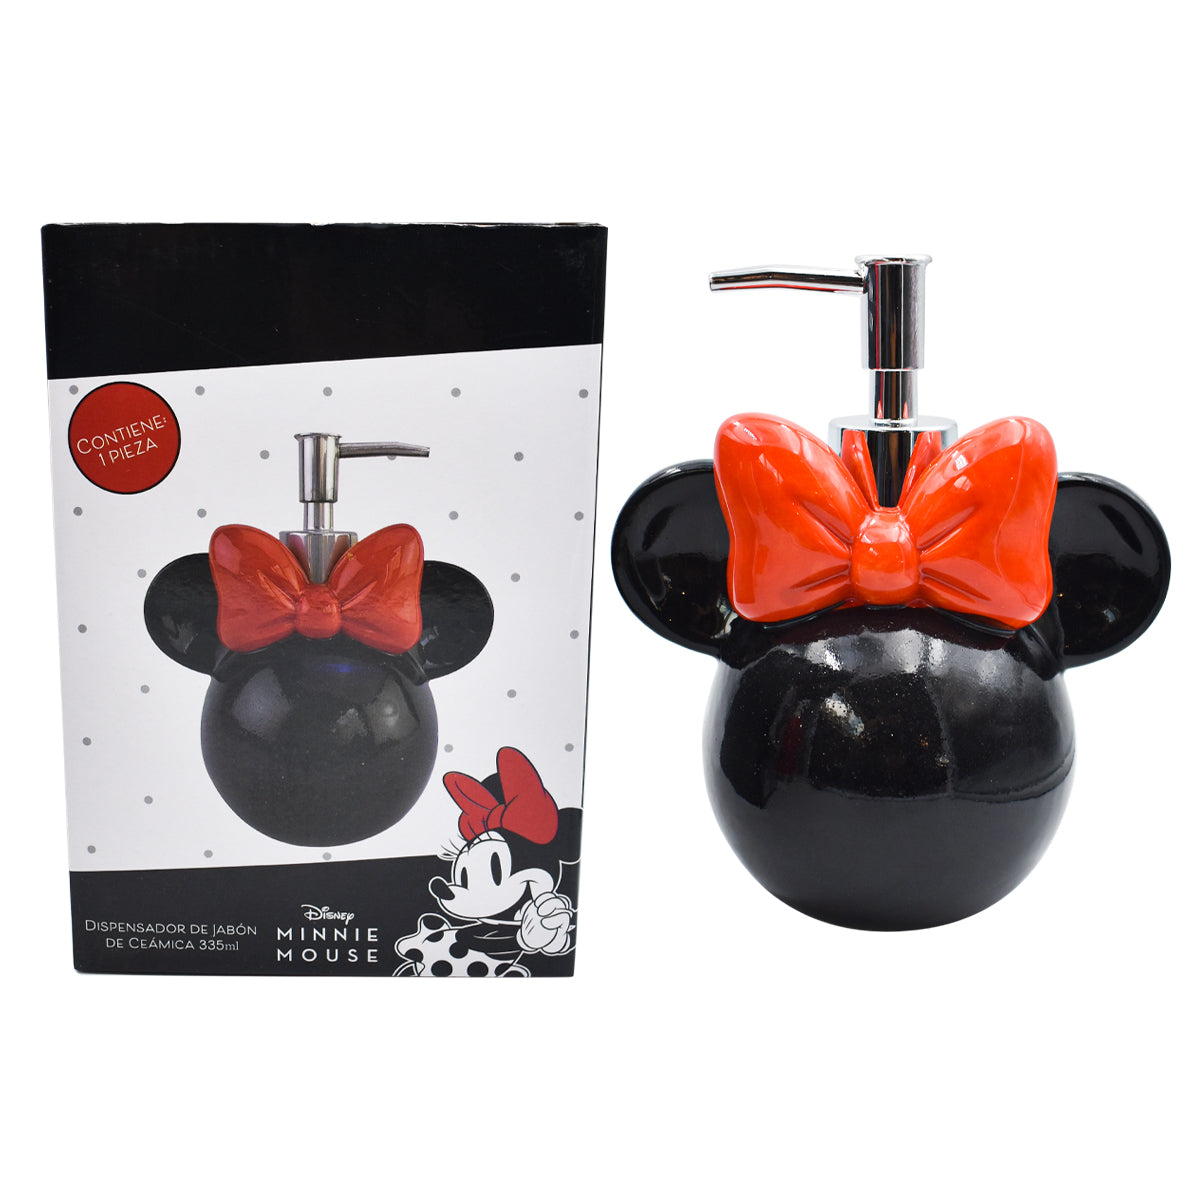 Fun Kids Dispensador De Jabon De Ceramica: Disney - Minnie 335 ml